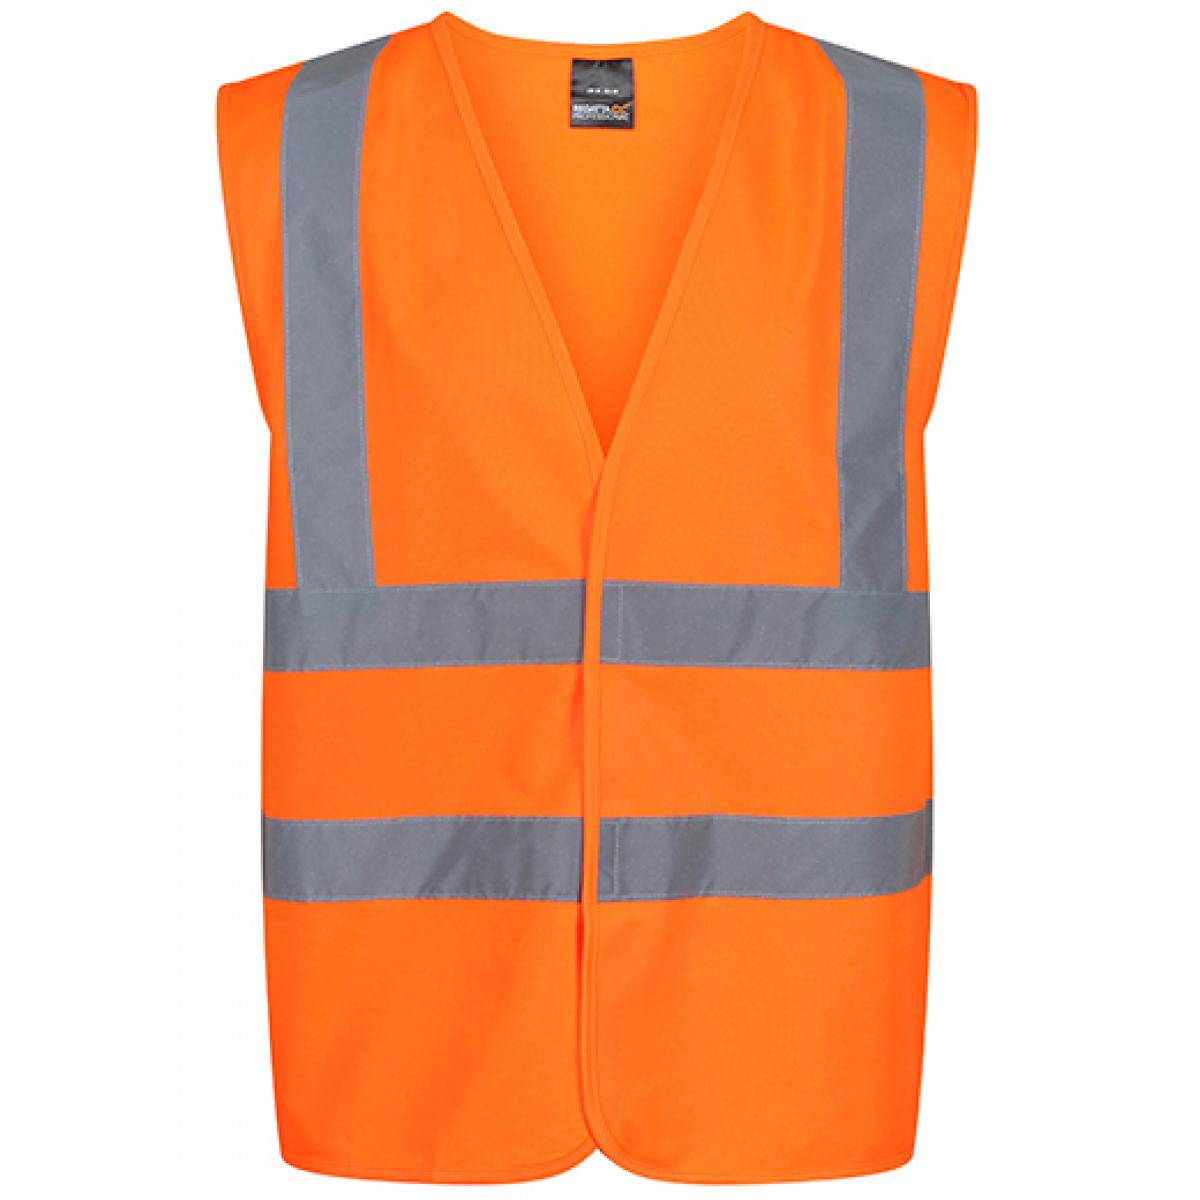 Hersteller: Regatta High Visibility Herstellernummer: TRS195 Artikelbezeichnung: Pro Hi Vis Vest - Sicherheitsveste Farbe: Orange